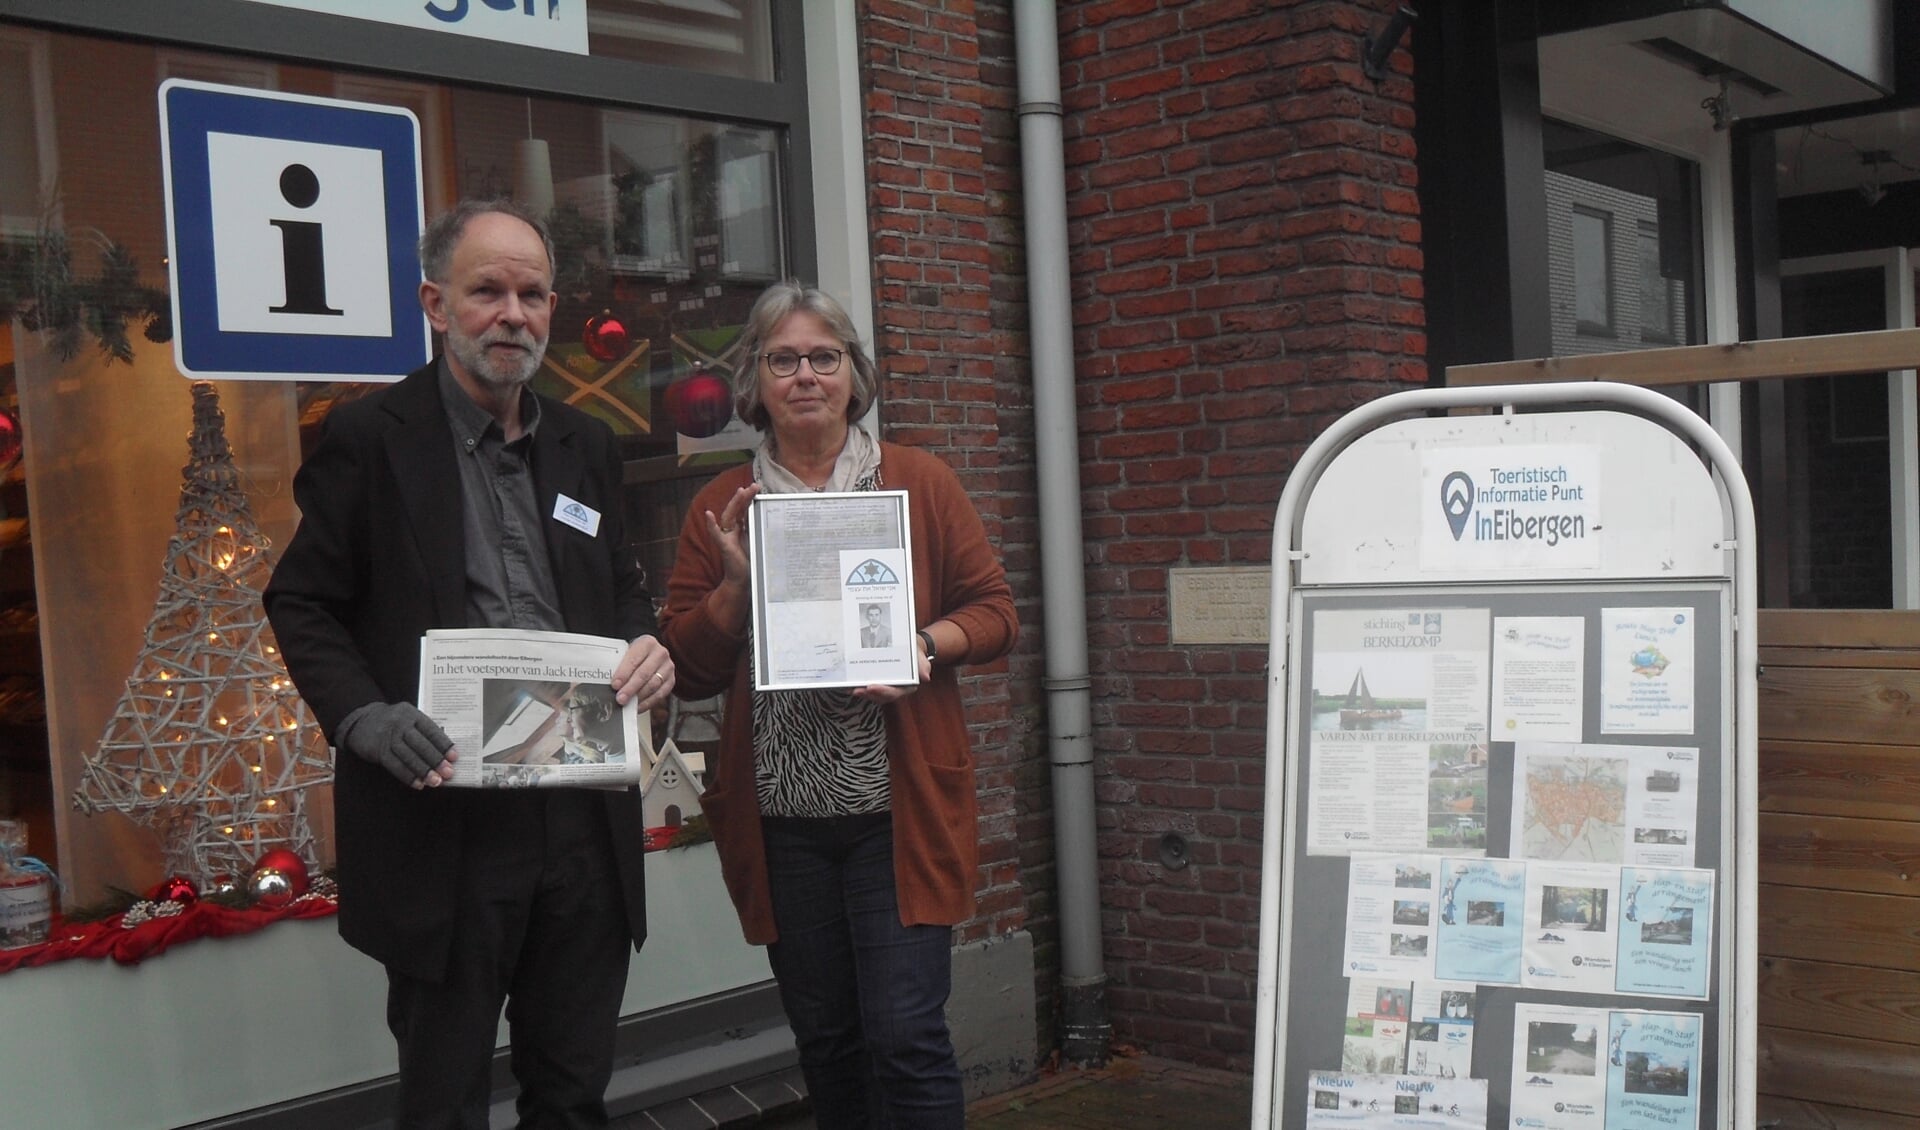 Overhandiging van de Jack Herschel-Wandeling door Bert Smeenk aan Imelda te Vaanholt-Wielens van de TIB. Foto: PR